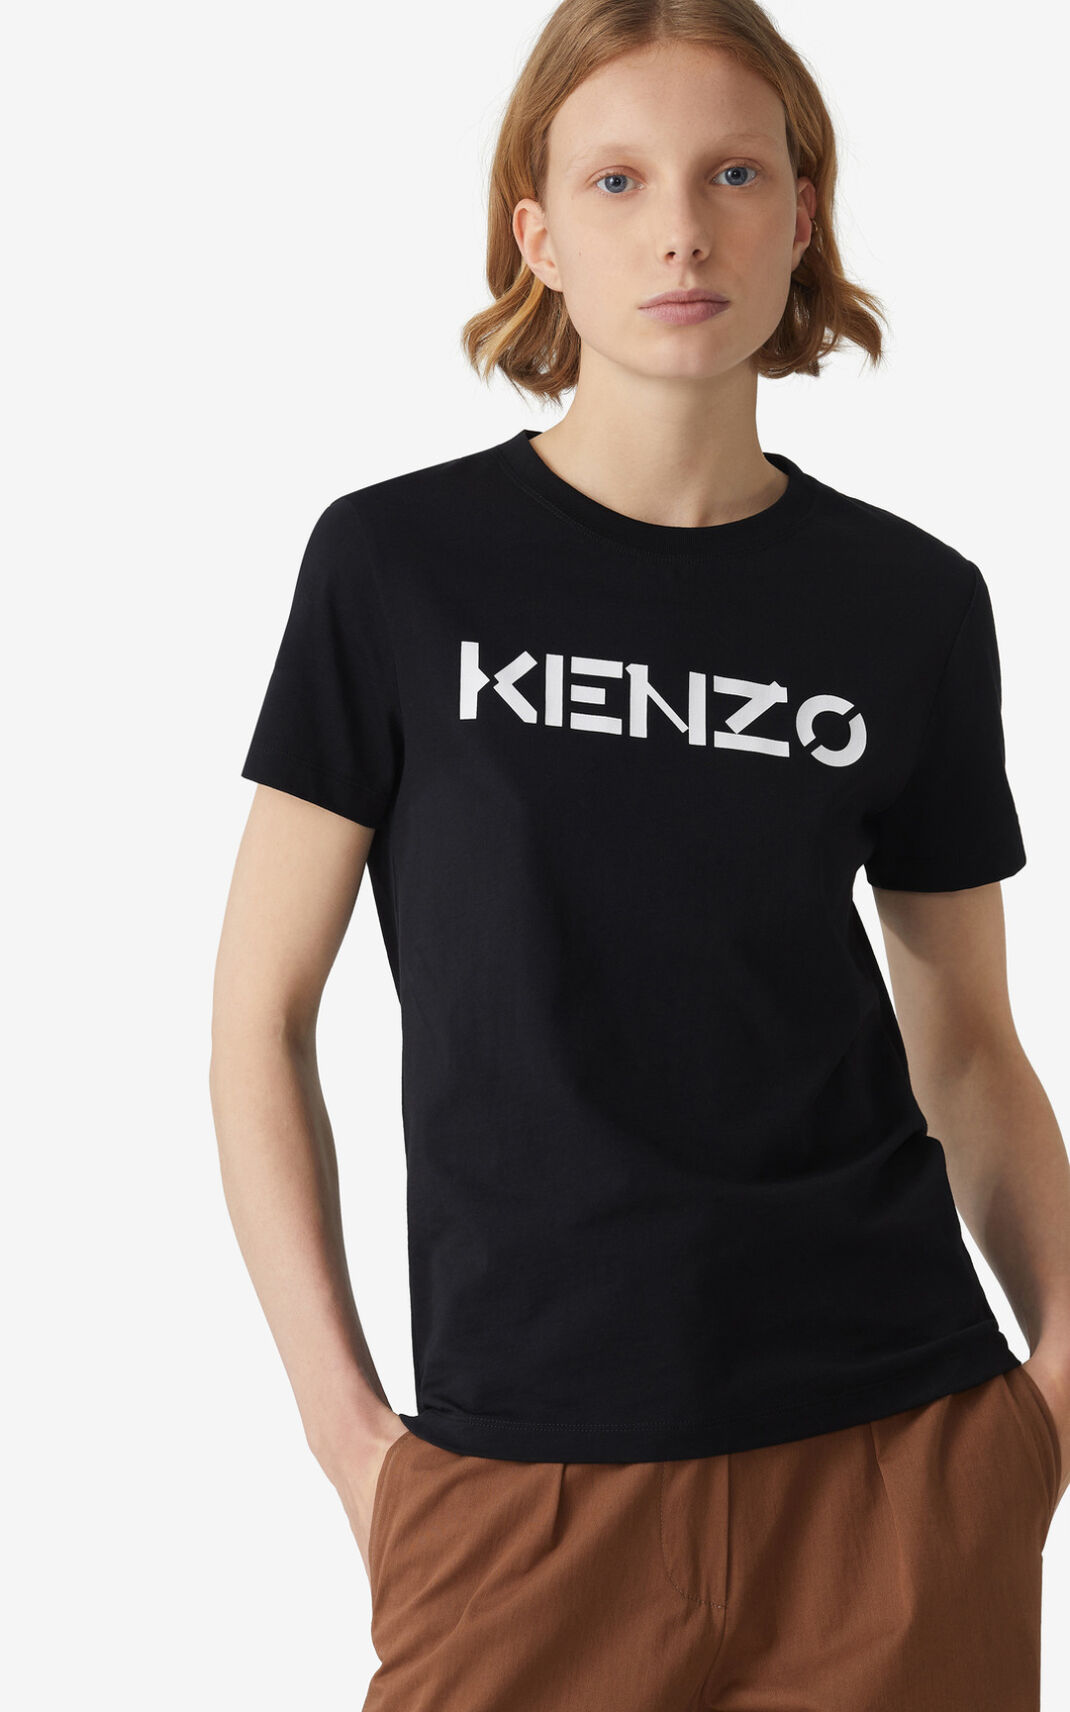 Kenzo Logo T Shirt Black For Womens 3014FPQNE